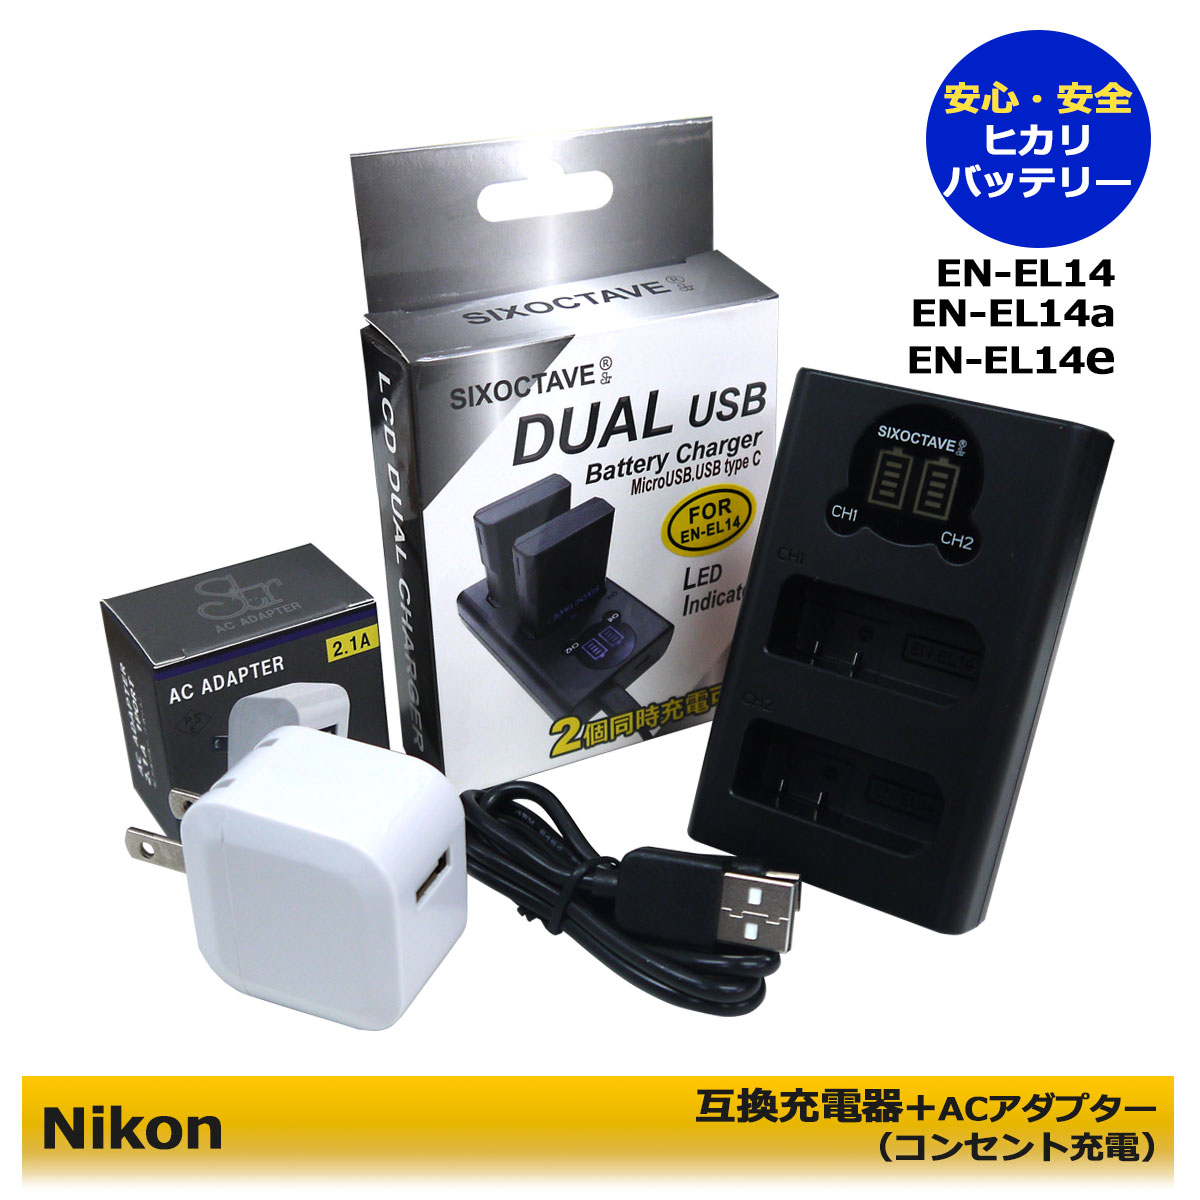 楽天市場】☆コンセント充電可能☆ ニコン EN-EL14a 互換USB充電器 1個と ACアダプター1個の 2点セット MH-24 / MH-24a  Nikon D3100 D3200 D3300 D3400 D3500 D5100 D5200 D5300 D5500 D5600 Df  デジタル一眼レフカメラ対応 (A2.1) (純正品と同じように使用可能 ...